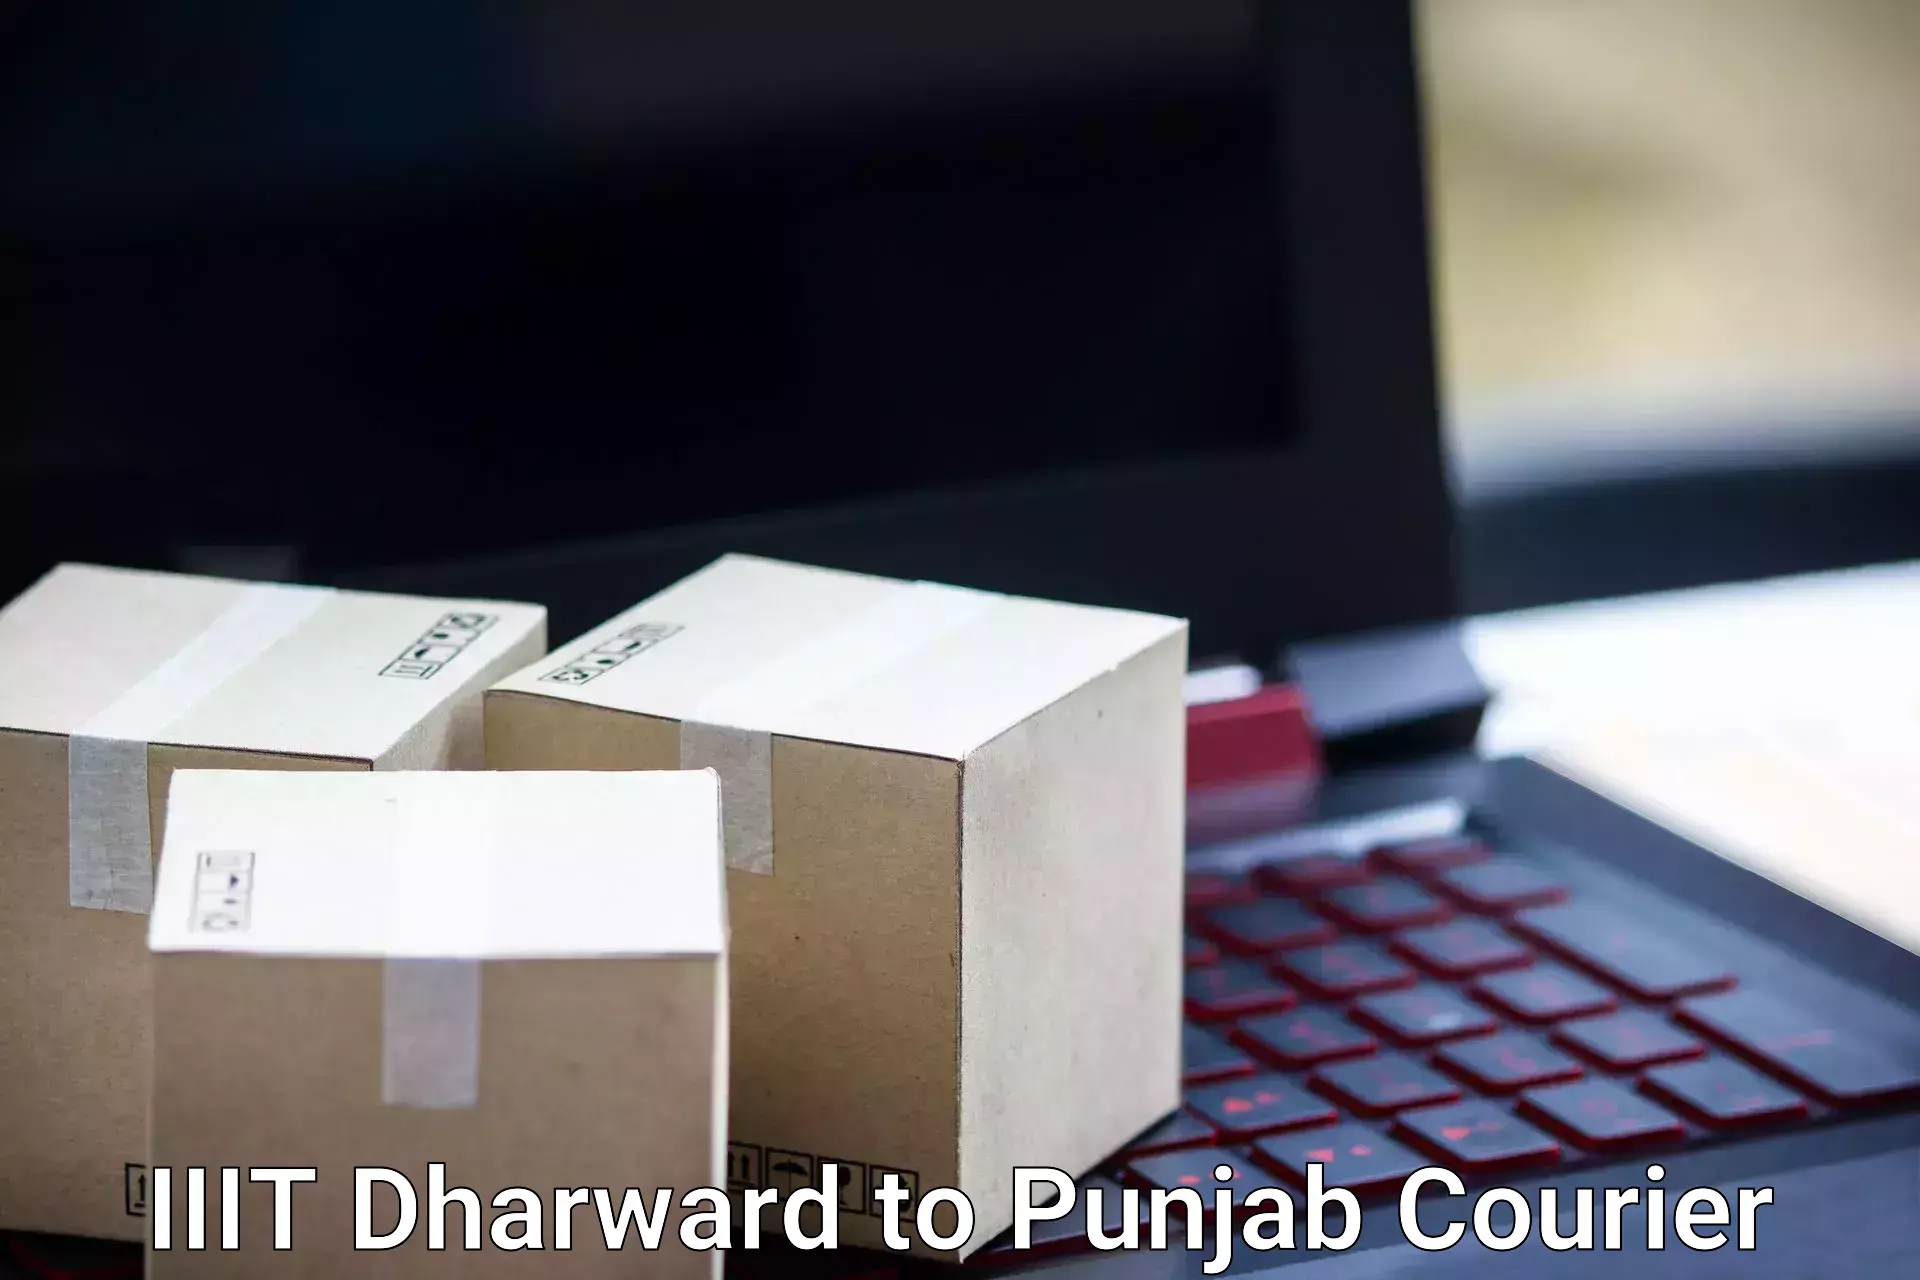 Holiday season luggage delivery IIIT Dharward to Punjab